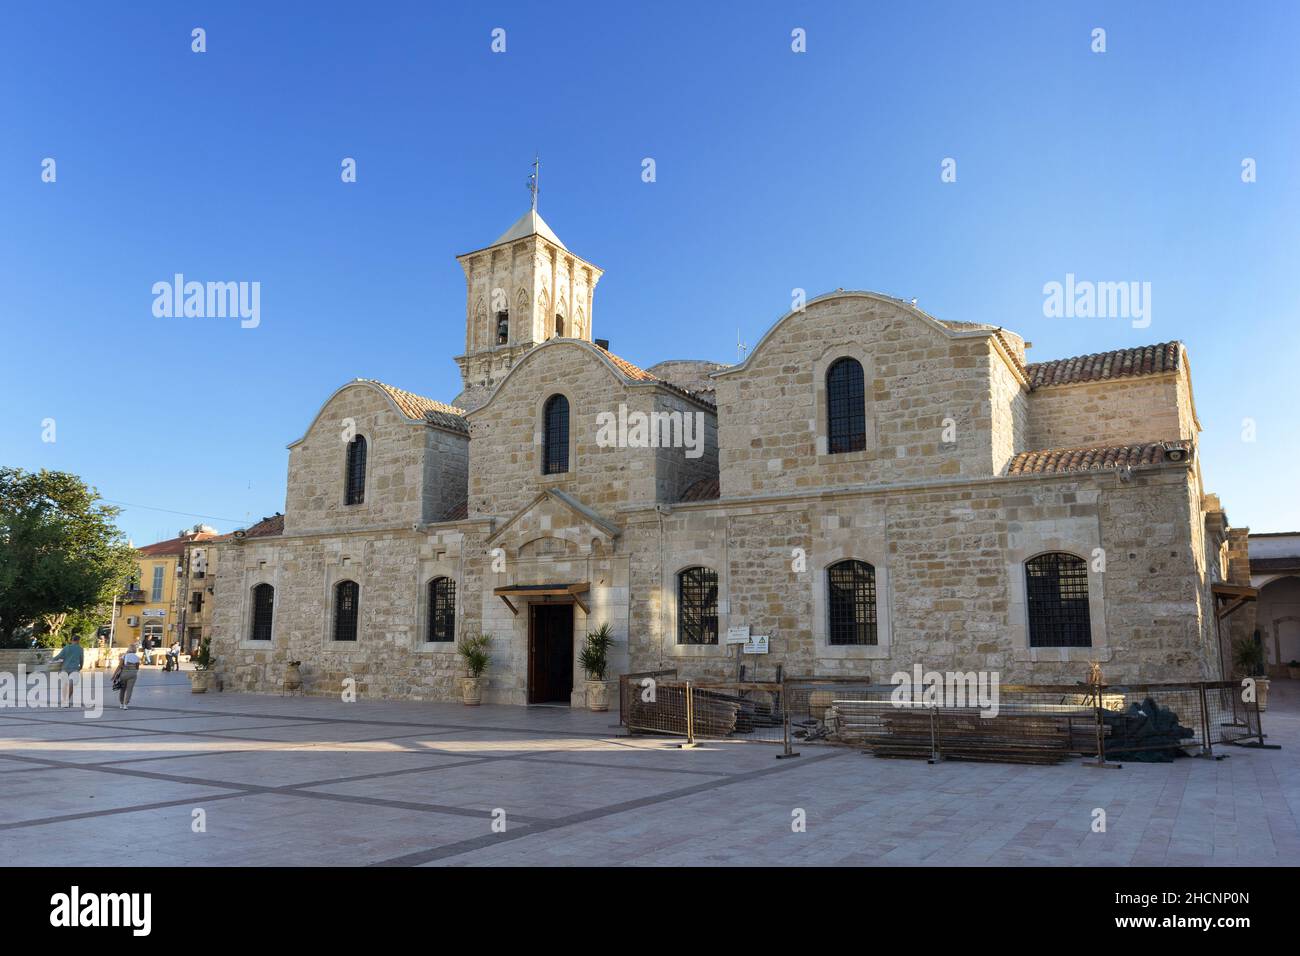 Larnaka, Zypern - 11. November 2017: Die Lazarus-Kirche von Larnaka. Es ist eine Kirche aus dem späten 9th. Jahrhundert, die zur Kirche von Zypern gehört, ein Autokeph Stockfoto